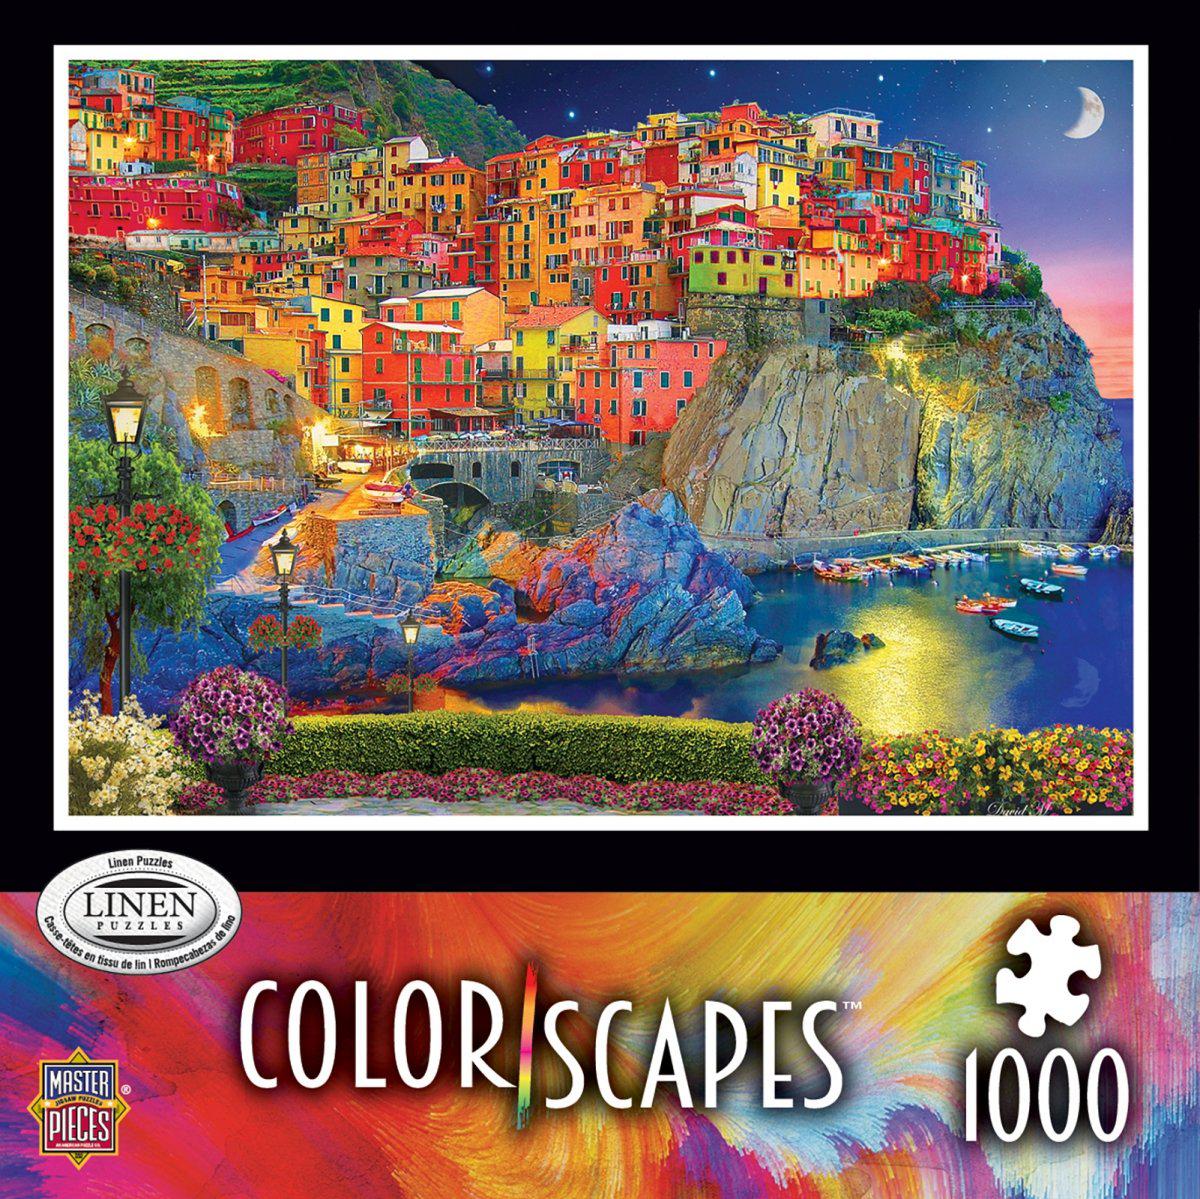 Colorscapes Linen - Evening Glow 1000 Piece Jigsaw Puzzle  McKenzie Place  802 Paul Bunyan Dr S Suite 5 Bemidji, MN 56601 218-755-8009